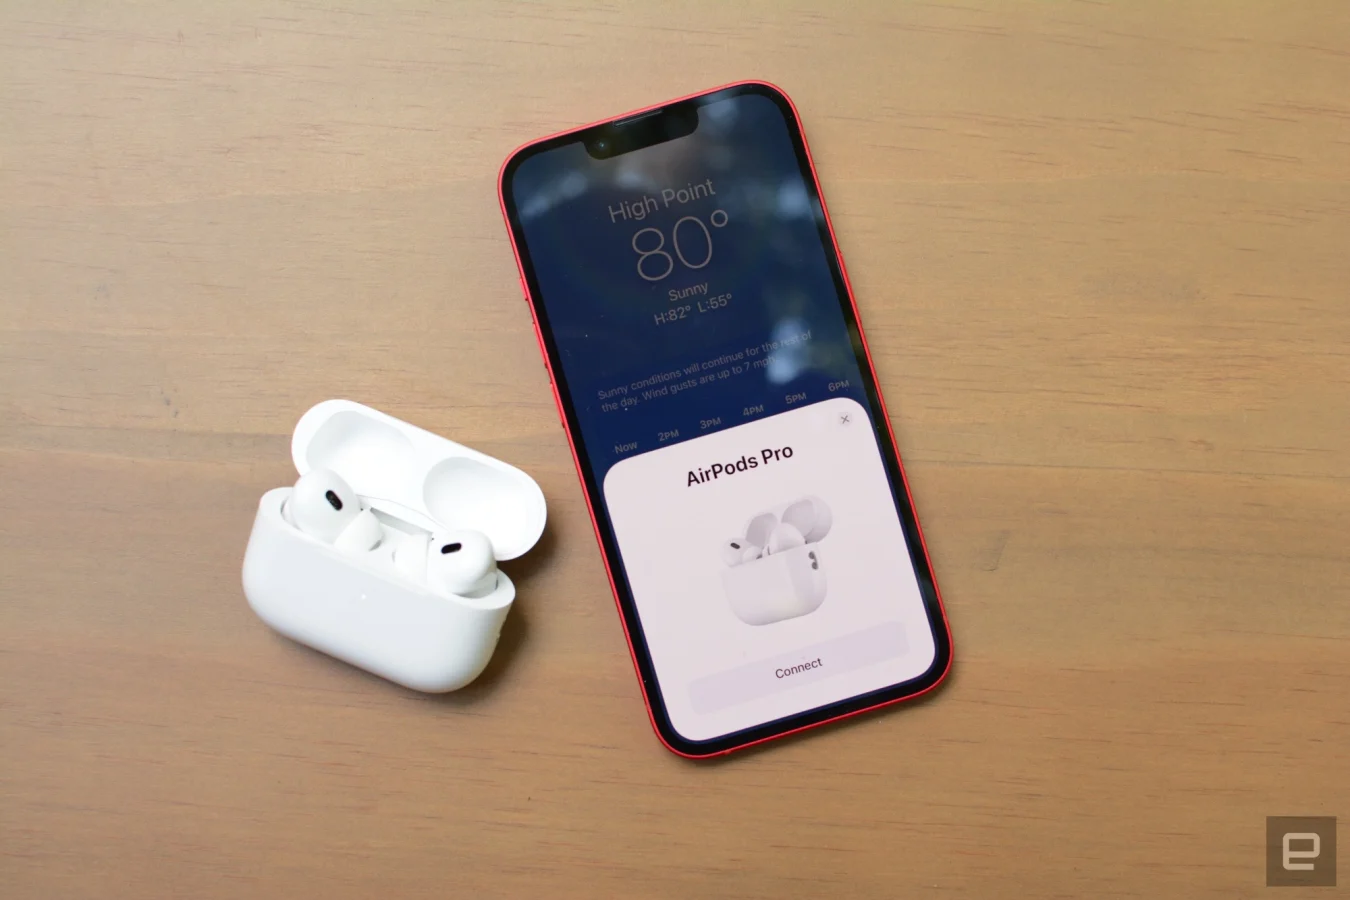 Trotz des unveränderten Designs hat Apple eine Reihe von Updates in die neuen AirPods Pro gepackt. Alle Annehmlichkeiten des Modells 2019 sind ebenfalls vorhanden, neben Ergänzungen wie adaptiver Transparenz, personalisiertem räumlichem Audio und einer neuen Touch-Geste im Schlepptau. Es gibt Raum, um die bekannte Formel weiter zu verfeinern, aber Apple hat iPhone-Besitzern mehrere Gründe für ein Upgrade gegeben.